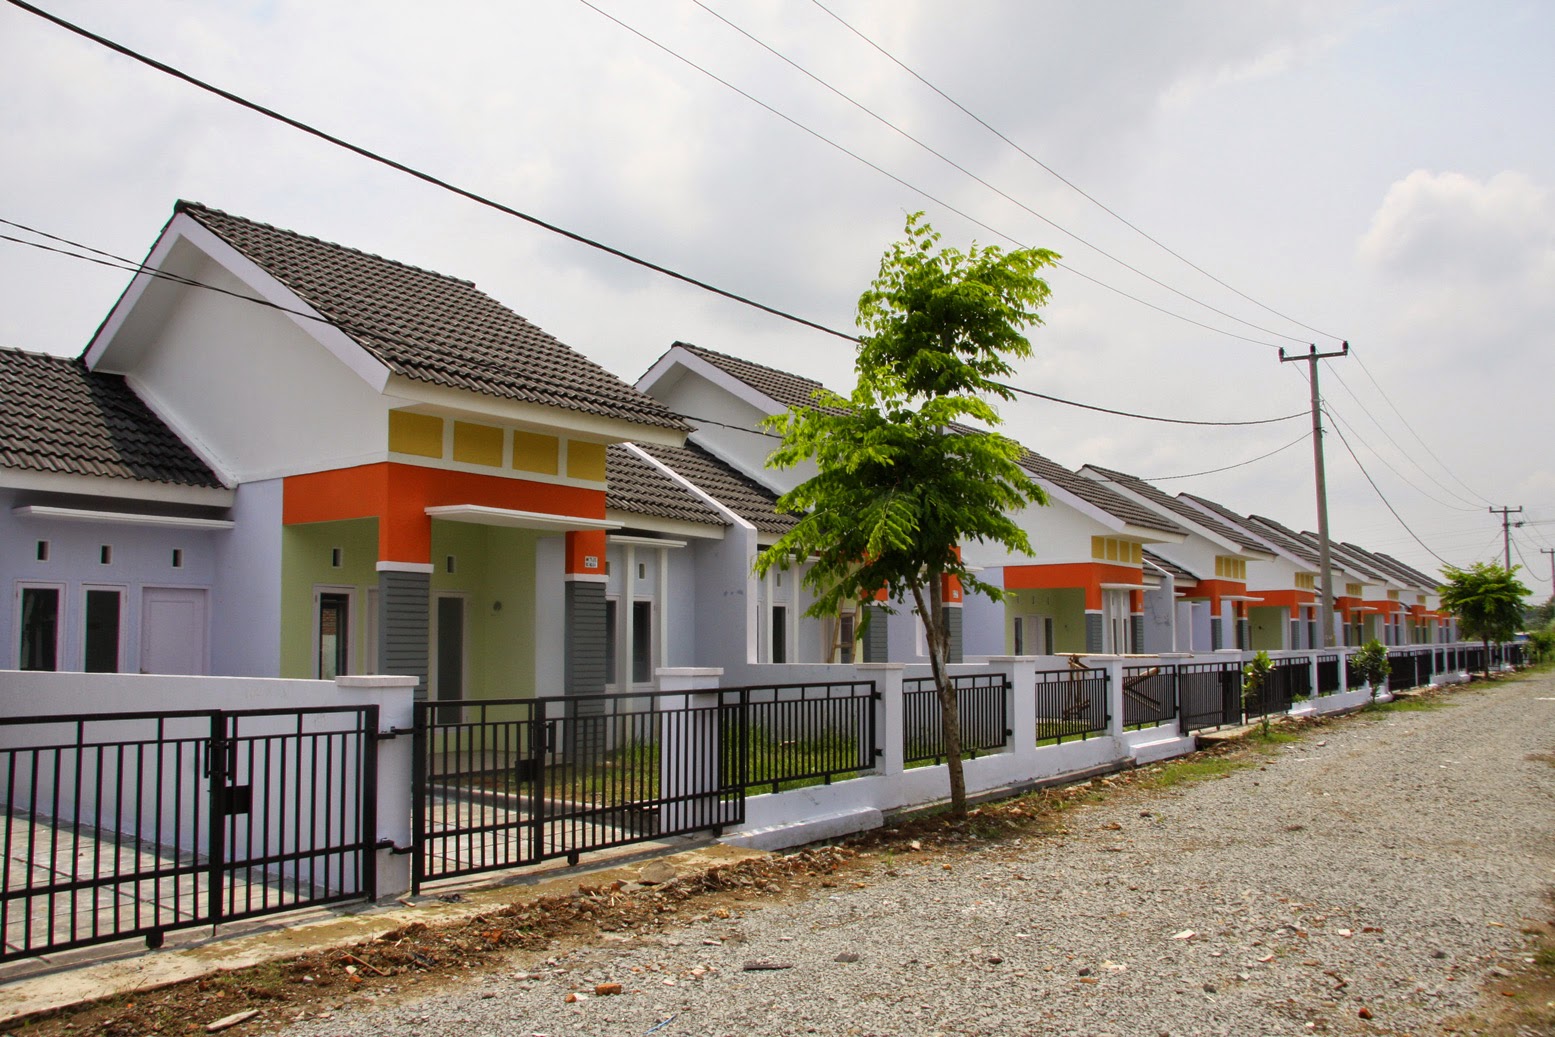 Gaji Rp 3 Jutaan Masih Bisa Beli Rumah Di Jakarta Kok Ini Caranya